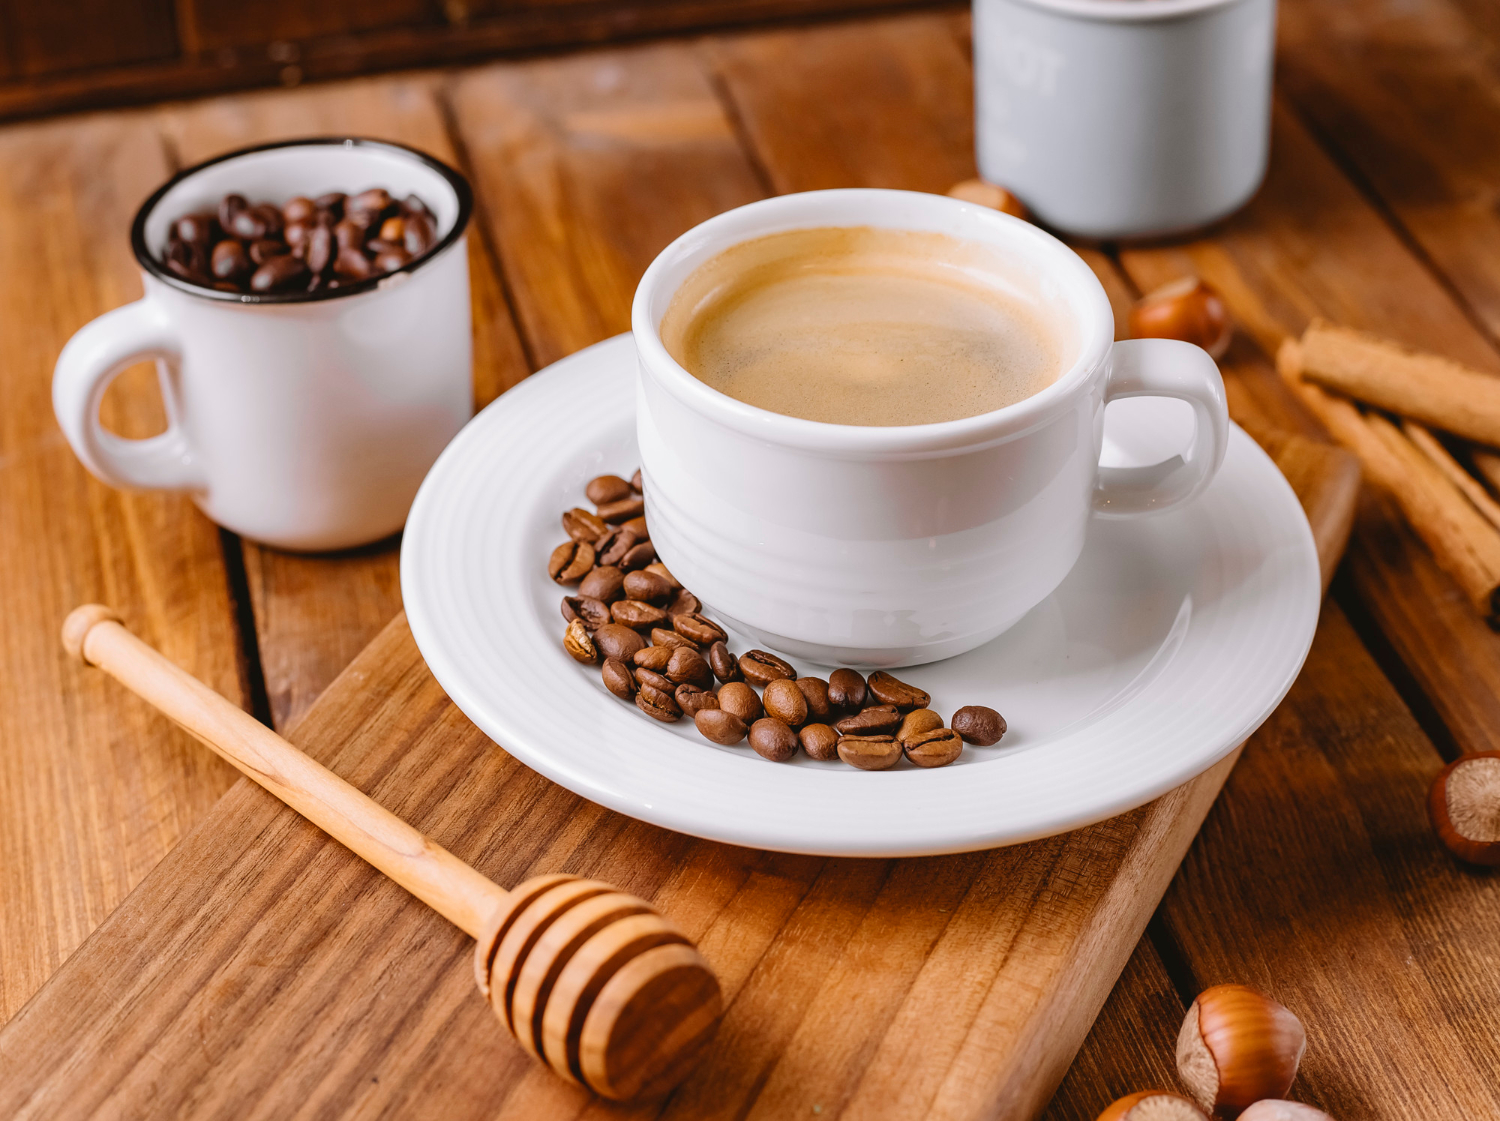 Bisnis kedai kopi memang sedang naik daun, tetapi apakah masih relevan dan akan bertahan lama?